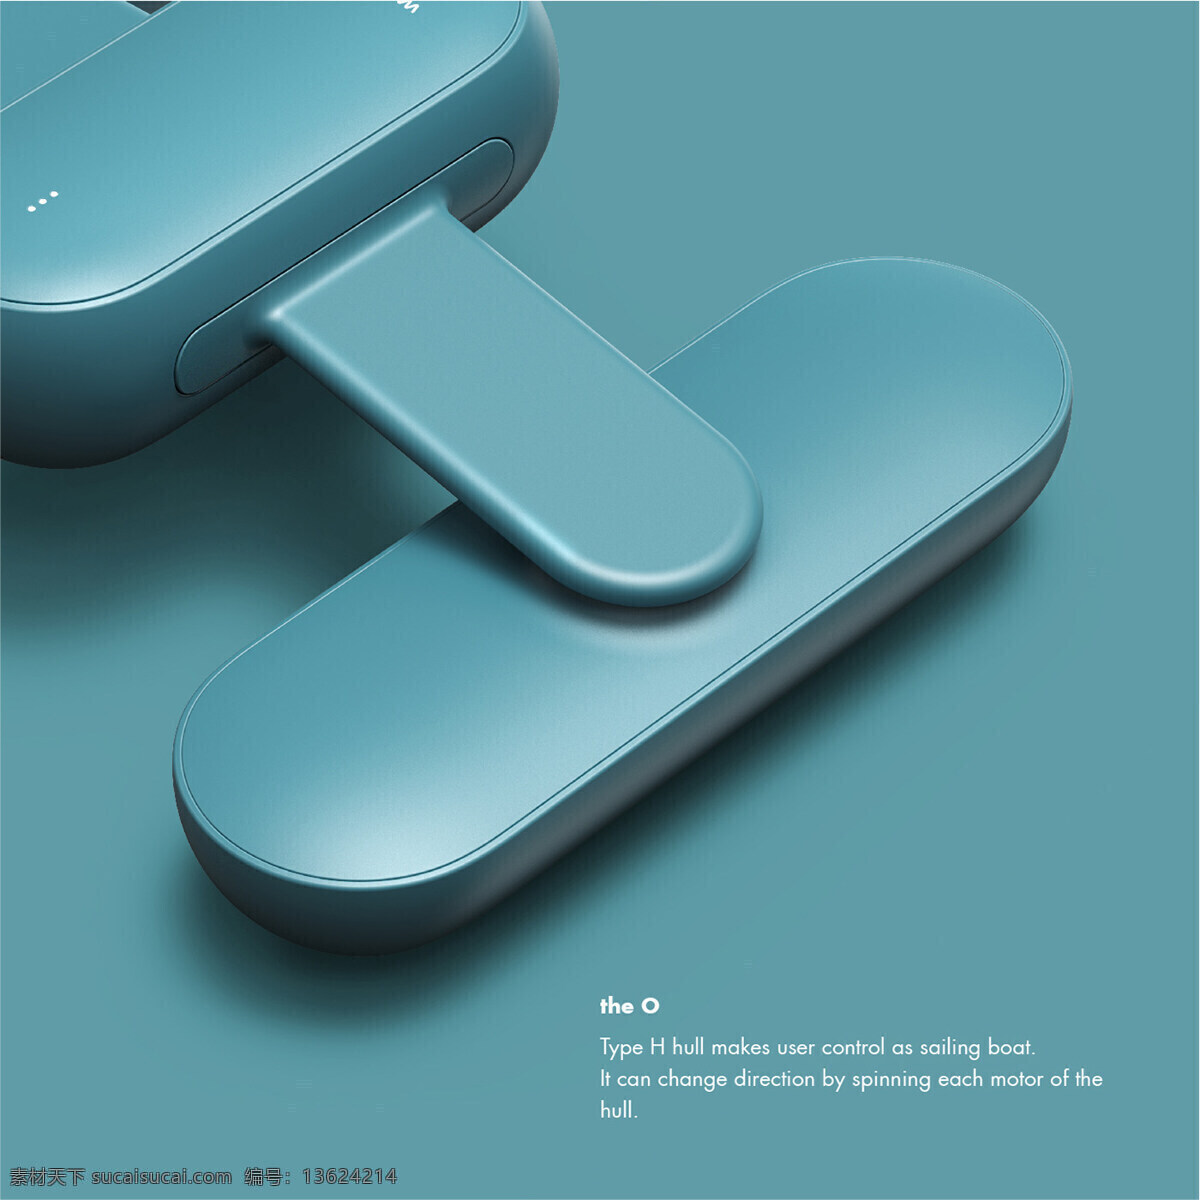 产品设计 概念设计 可携带 蓝色 模型 圆润 可爱 无人机